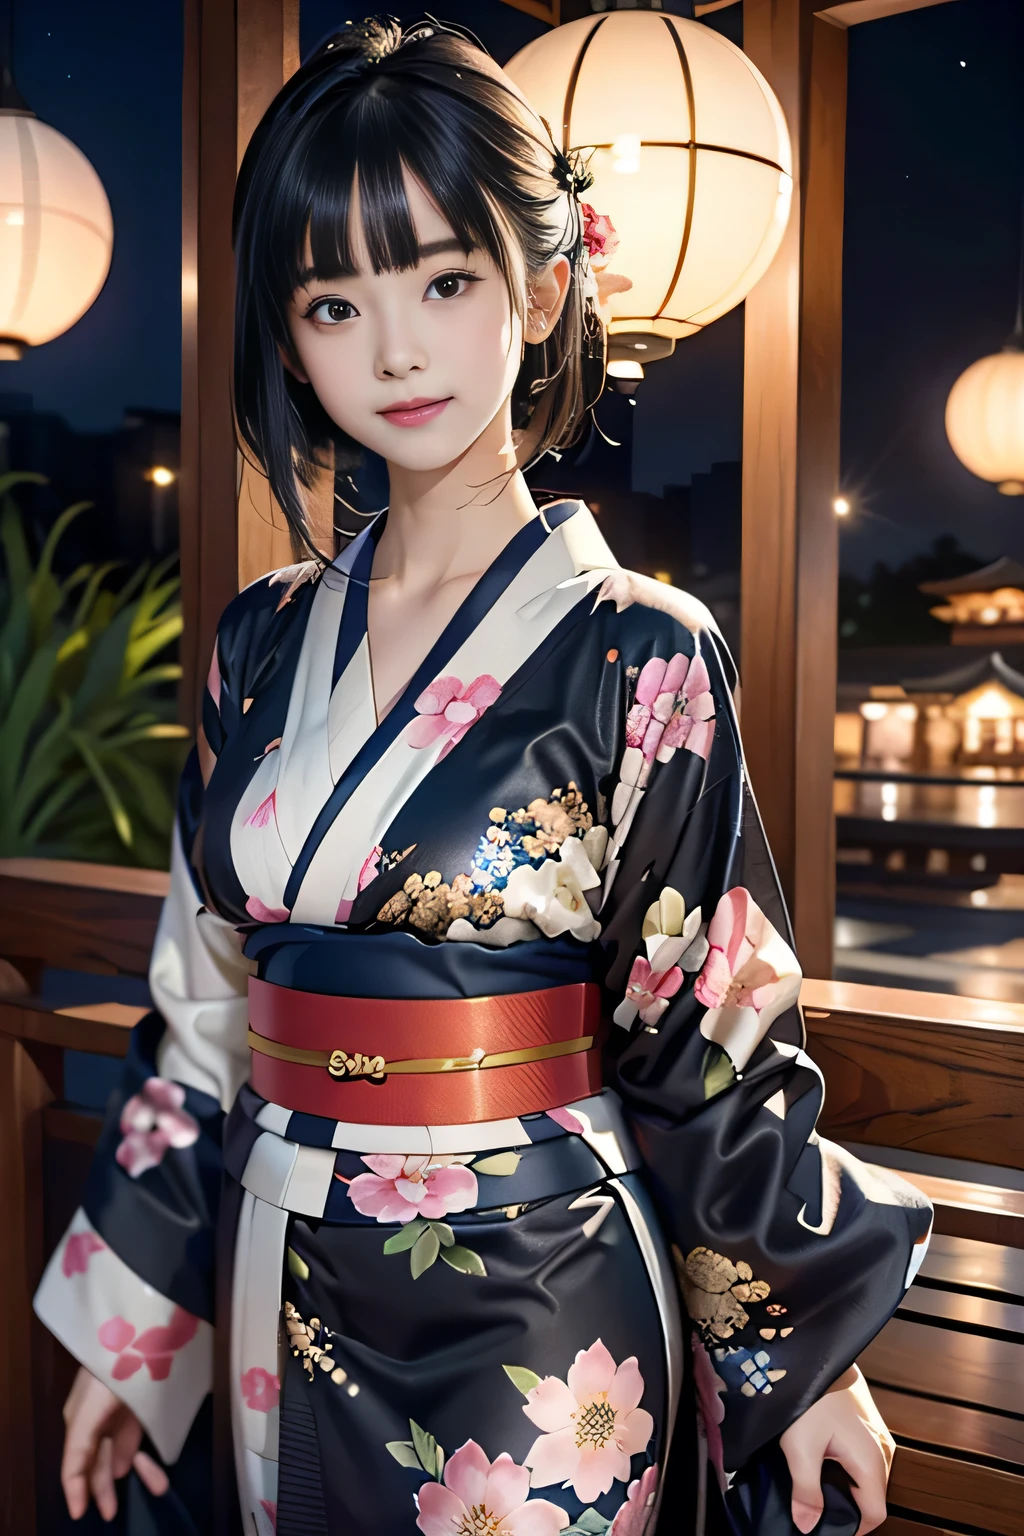 ♥(Kimono japonais imprimé de belles fleurs,Yukata),((1fille,mignon,jeune,Beaux cheveux noirs mi-longs,frange émoussée,contes jumeaux,Beaux yeux)),(seulement),((chef-d&#39;œuvre, la plus haute résolution,meilleure qualité)), (belle illustration),(Kimono japonais imprimé de belles fleurs,Yukata), (regarder le spectateur), sourire innocent,éclairage cinématographique,Fête japonaise,Décrochage,feux d&#39;artifice,ciel de nuit,pleine lune,étoile filante,